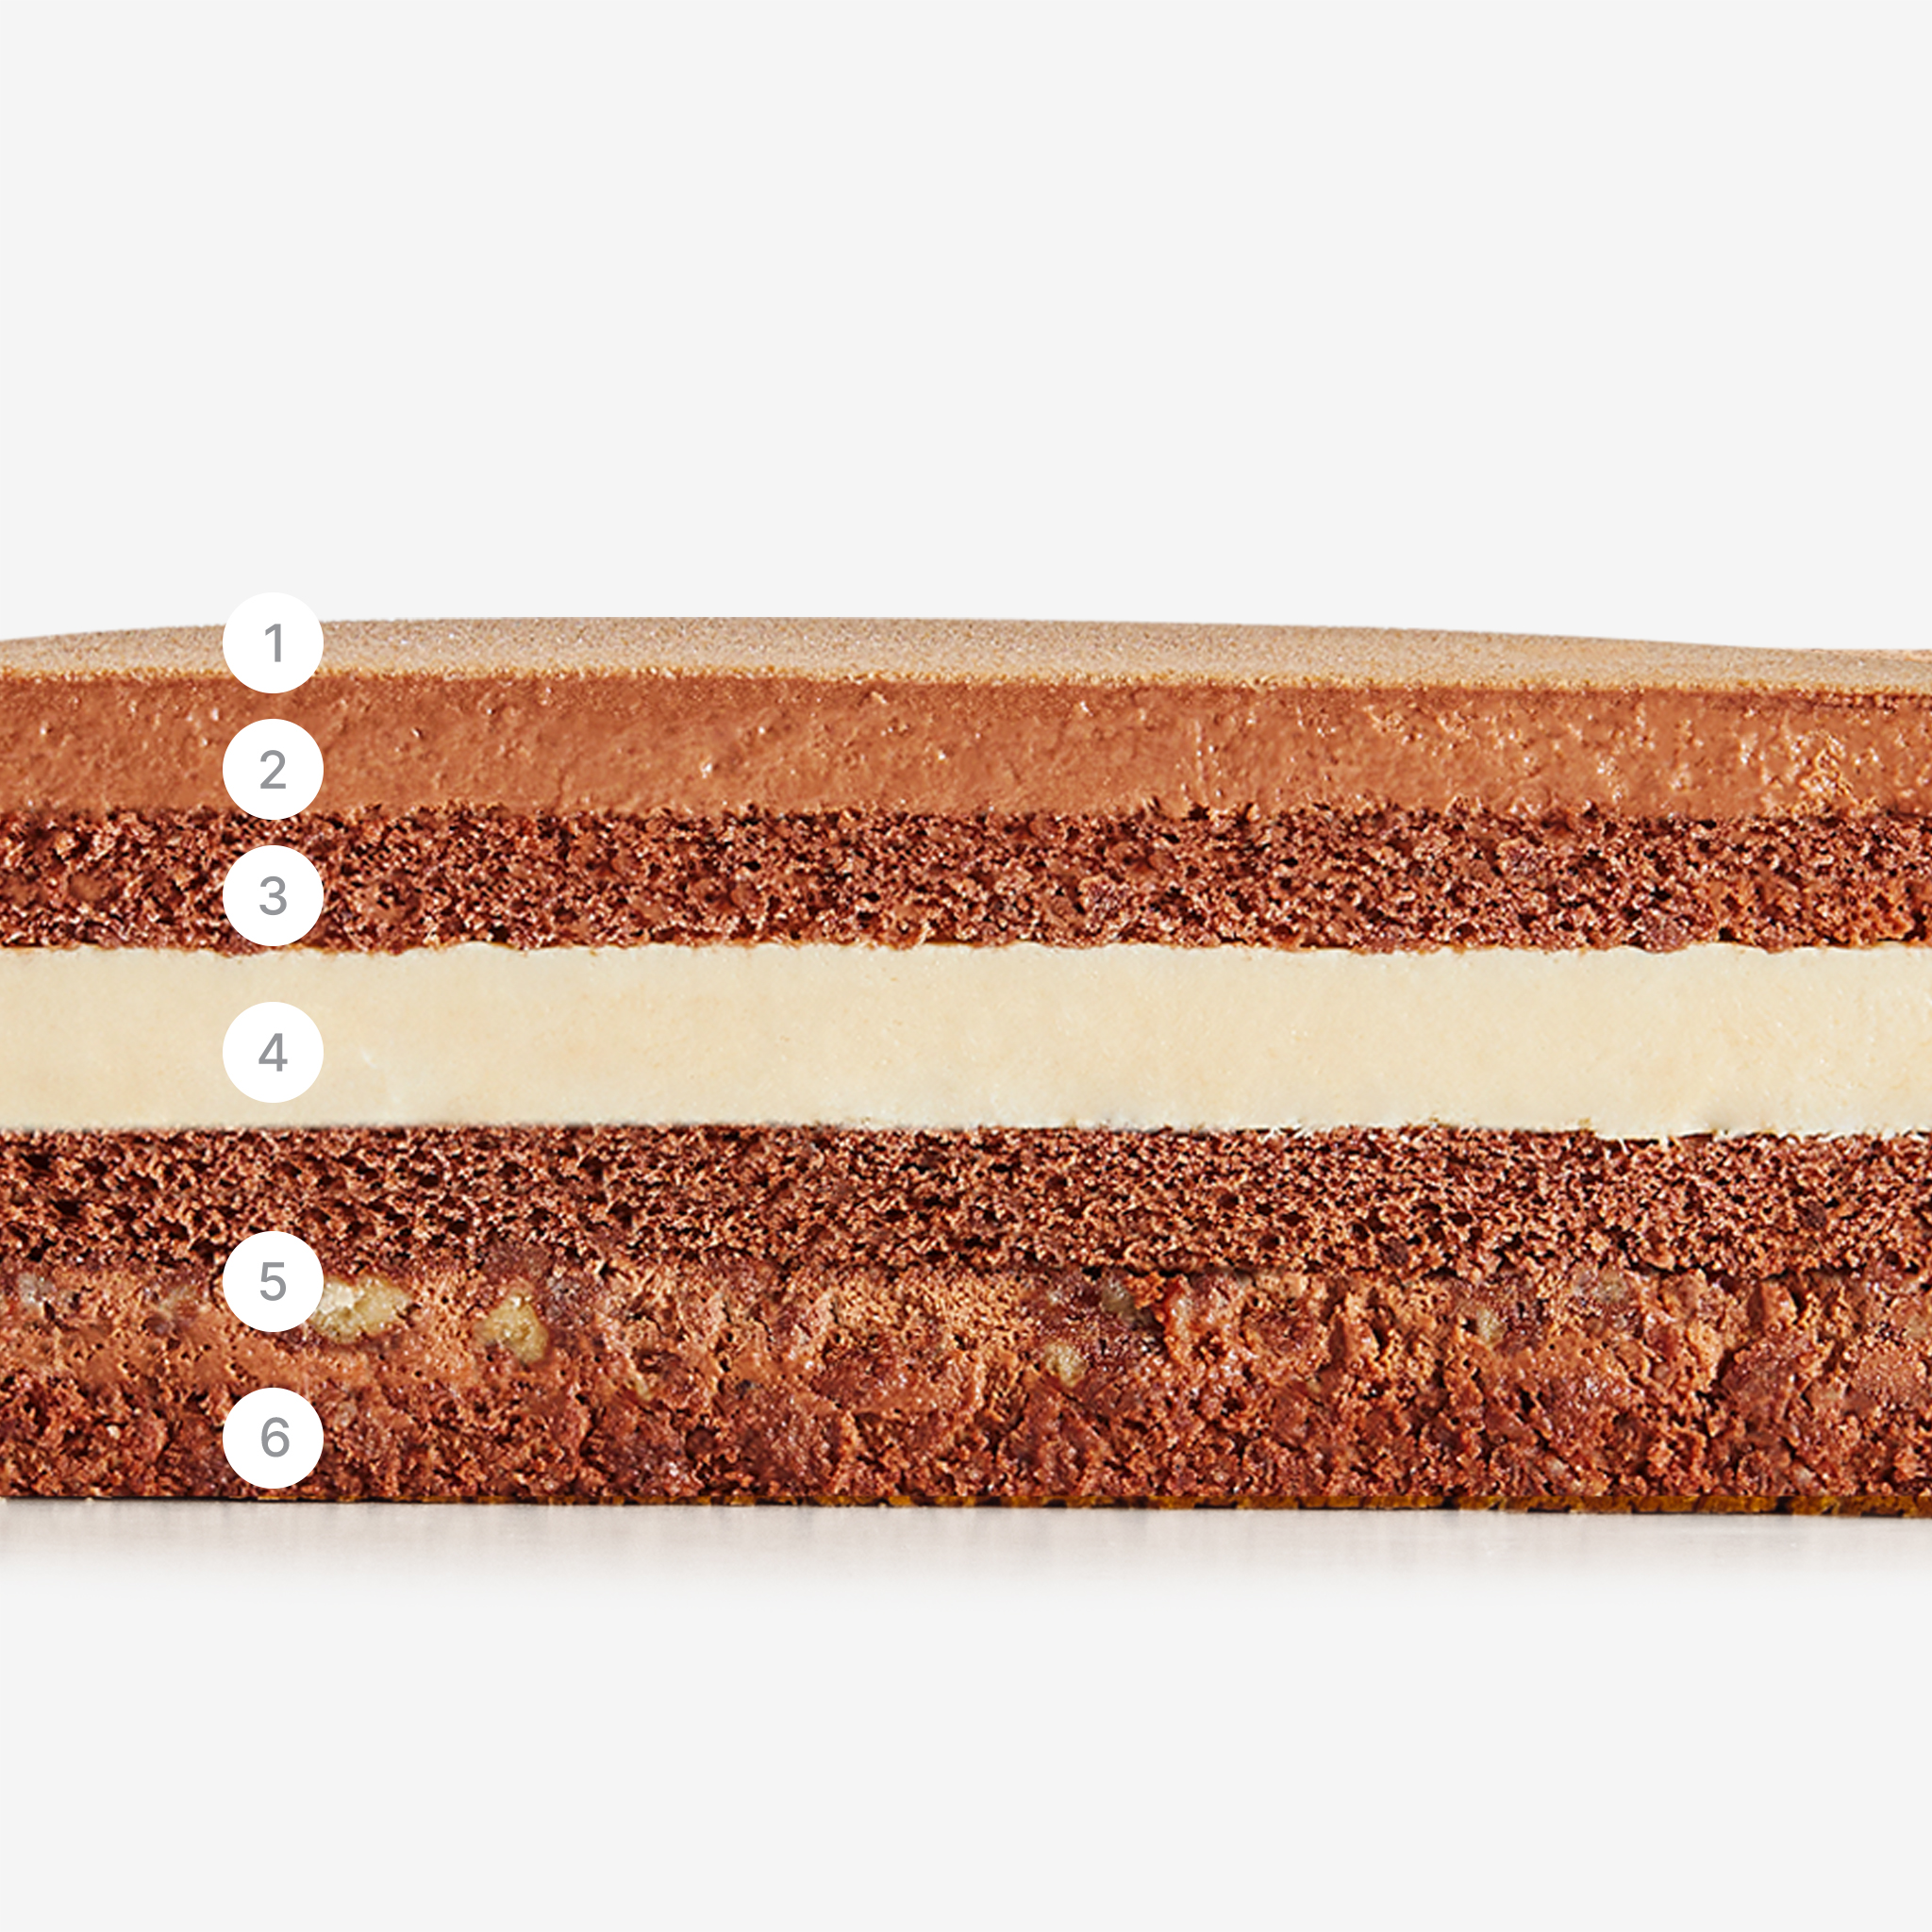 LaFuong Pastry – Chocovani – Sô-cô-la & Vani. Bắt đầu với lớp kem mousse được làm từ sô-cô-la đen nguyên chất vô cùng đậm đà. Đi kèm với ba lớp bạt bánh sô-cô-la đen có cảm giác xốp, mềm ẩm để bạn có thể từ từ nhâm nhi vị sâu của sô-cô-la. . Khi kết hợp cùng một lớp kem ngậy vị Vani Madagascar, chiếc bánh sẽ trở nên nhẹ nhàng và ít ngọt hơn để bạn có thể thoải mái thưởng thức thêm miếng thứ hai mà không sợ ngấy. Chocolate Fans, xin đừng bỏ qua! 